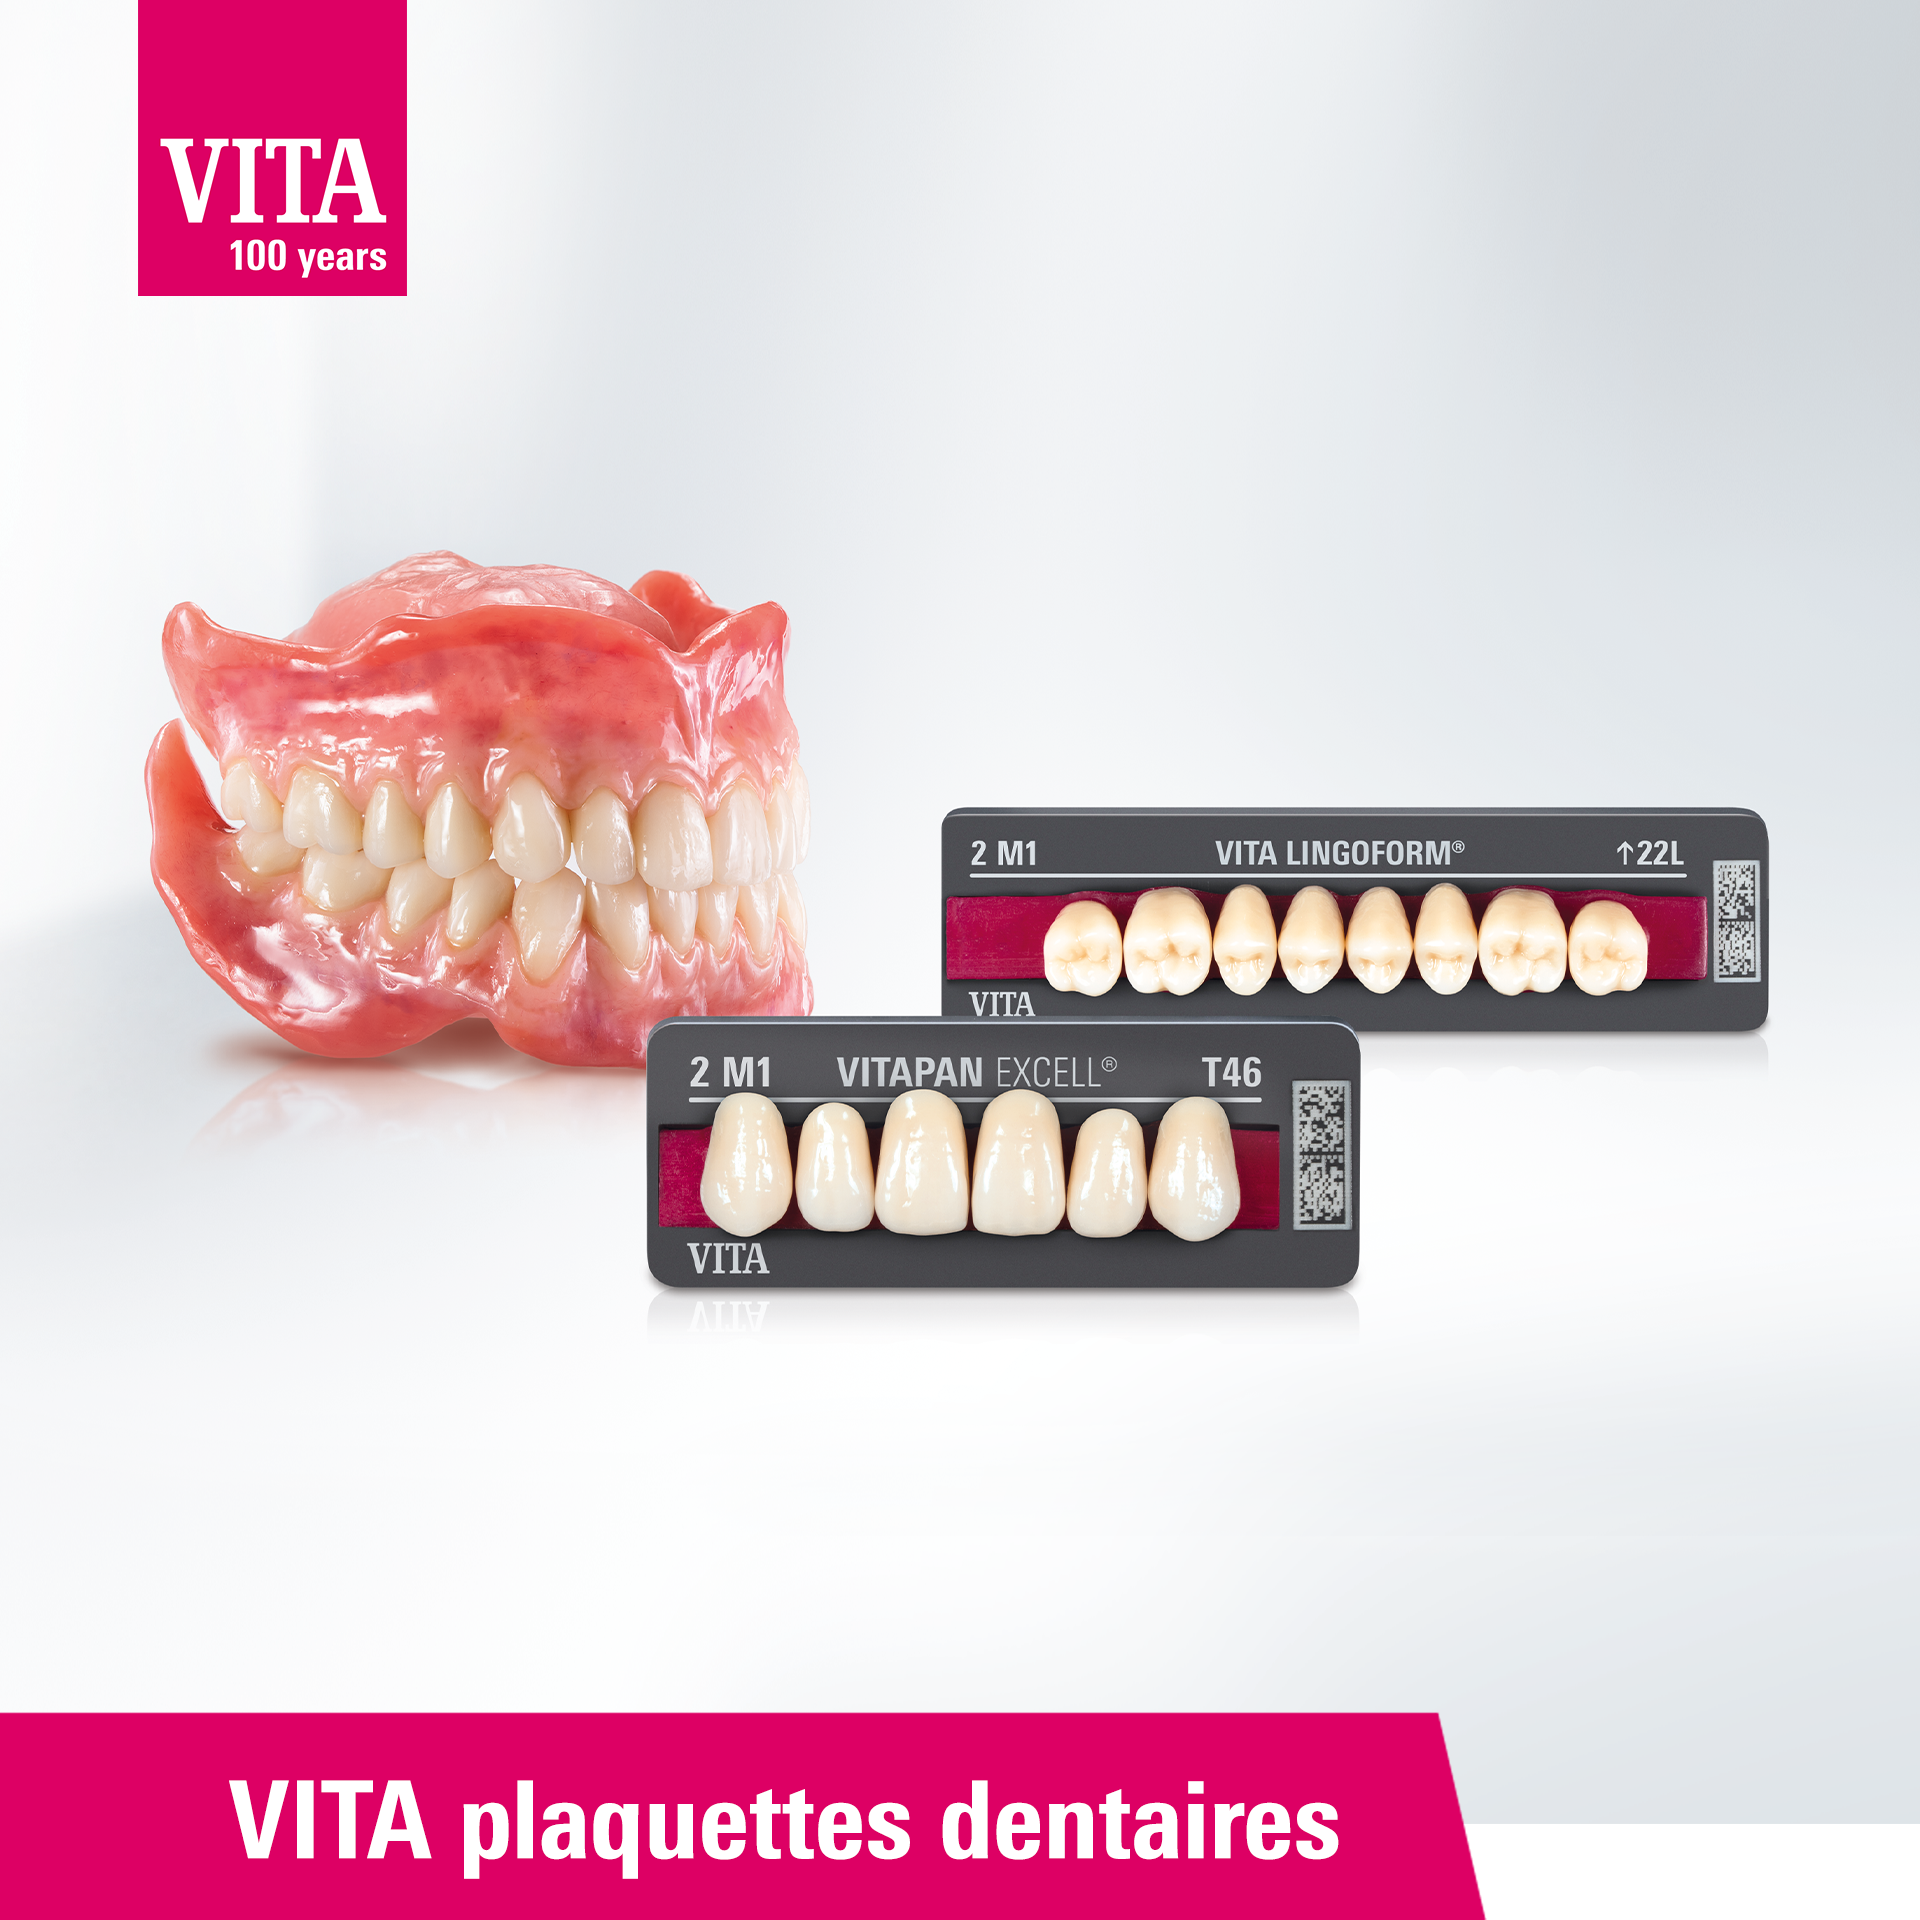 VITA plaquettes dentaires - Nouveau look